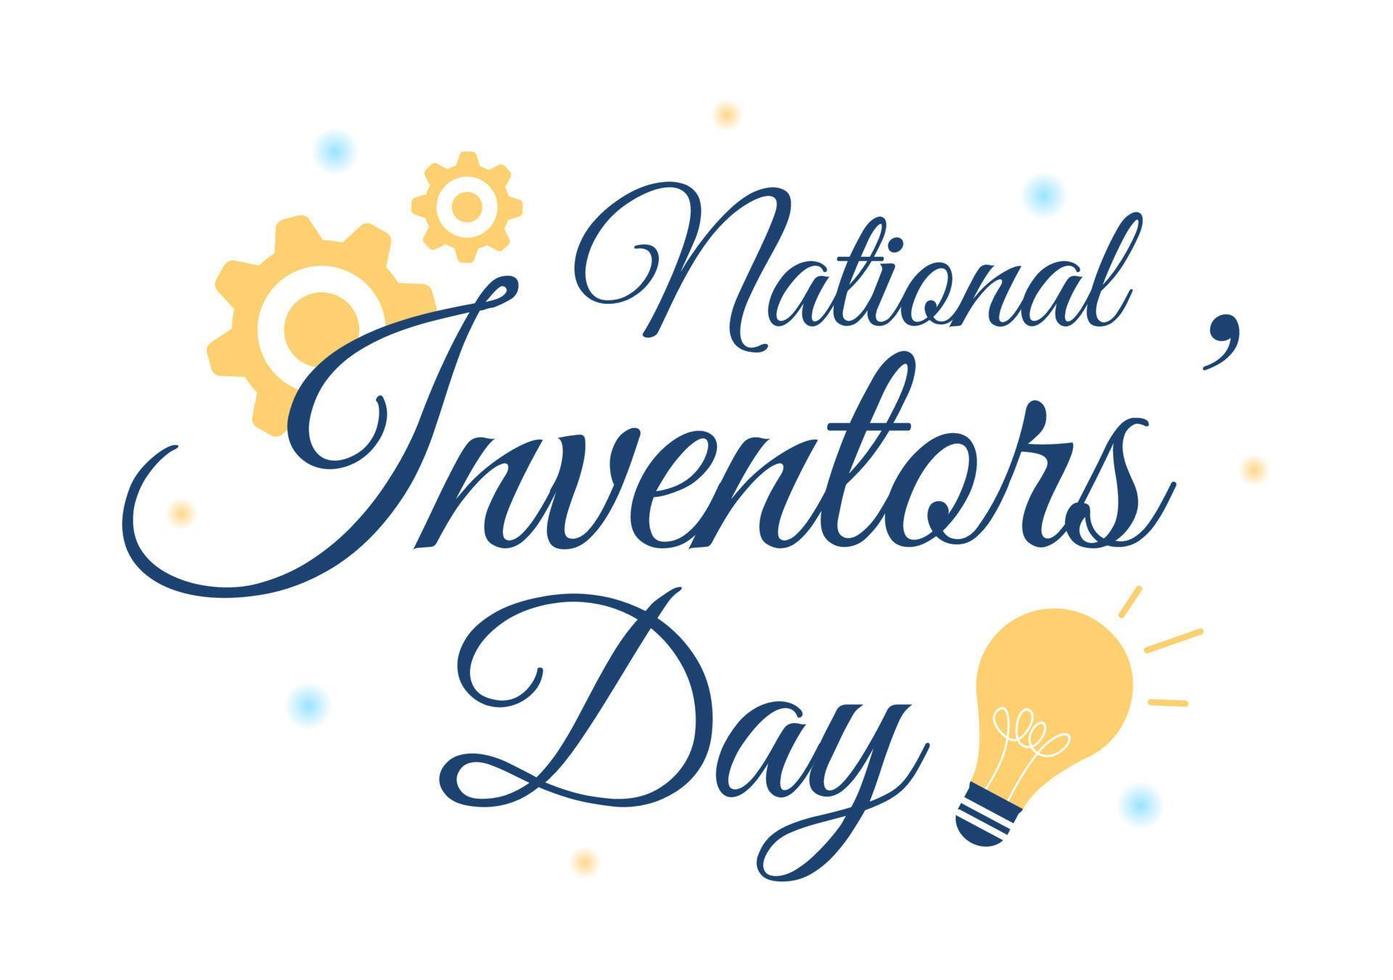 día nacional de los inventores el 11 de febrero celebración de la innovación genial para honrar al creador de la ciencia en la ilustración de plantilla dibujada a mano de dibujos animados planos vector